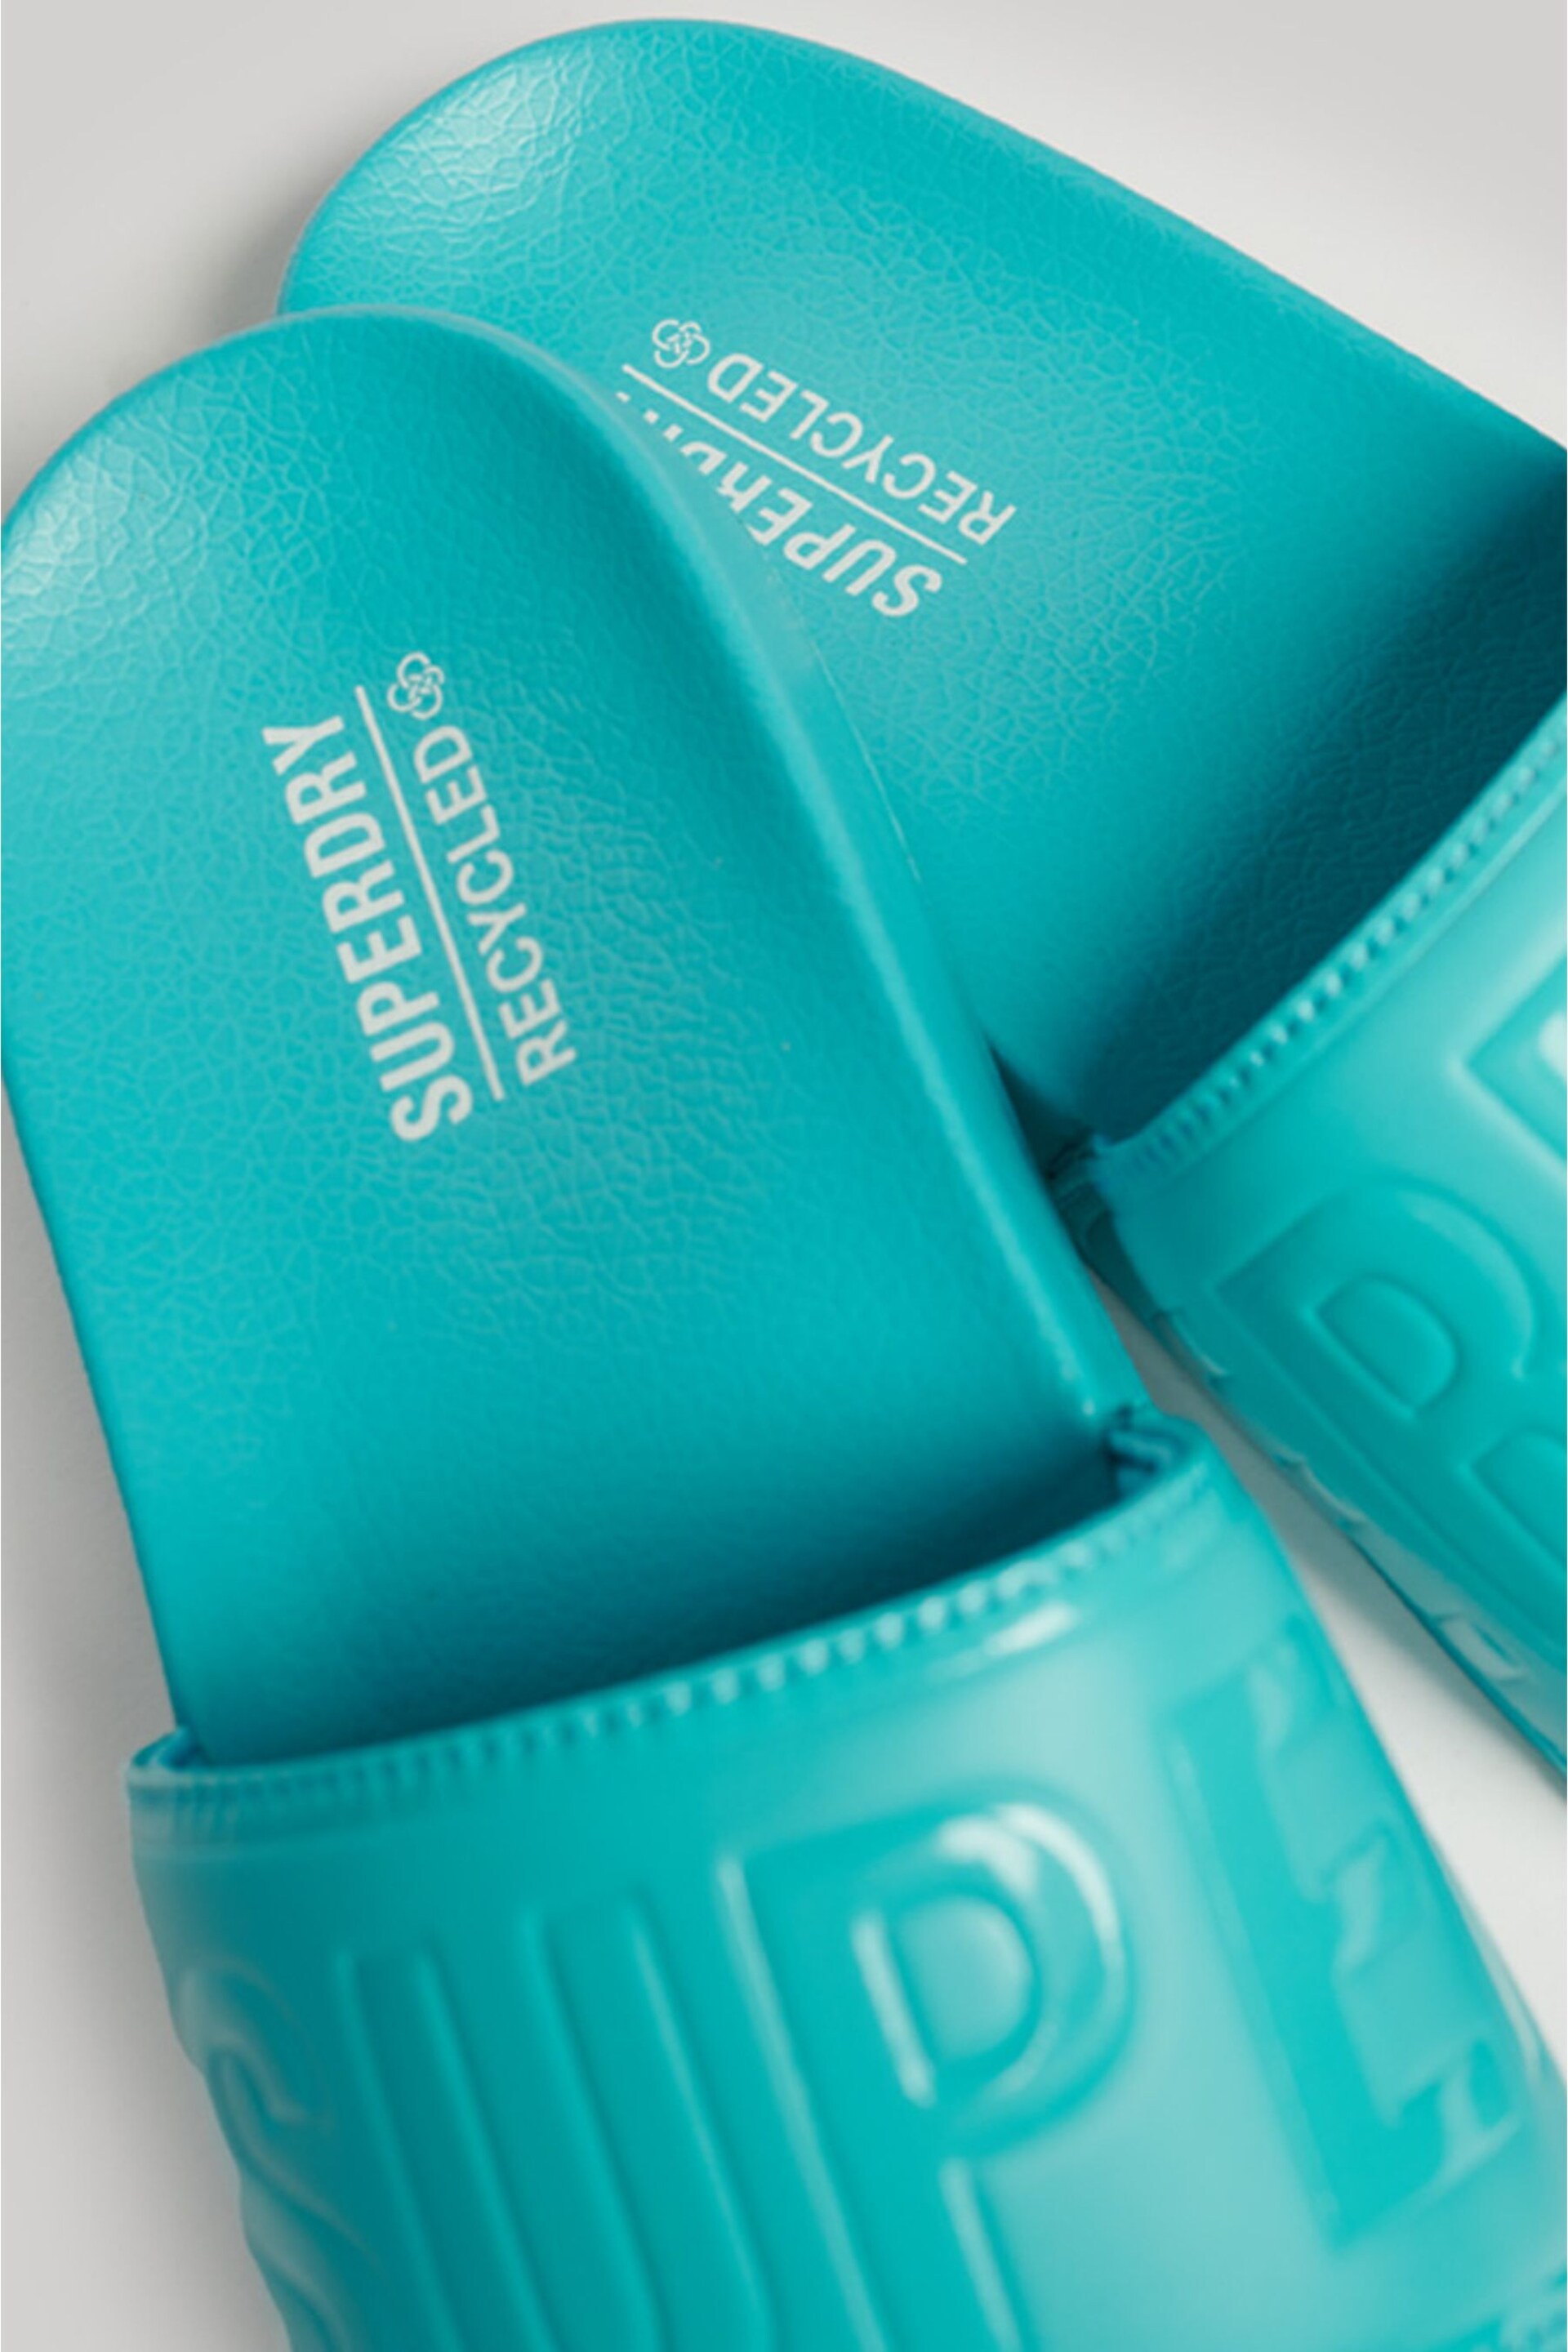 Superdry Blue Core Vegan Pool Sliders - Image 2 of 5